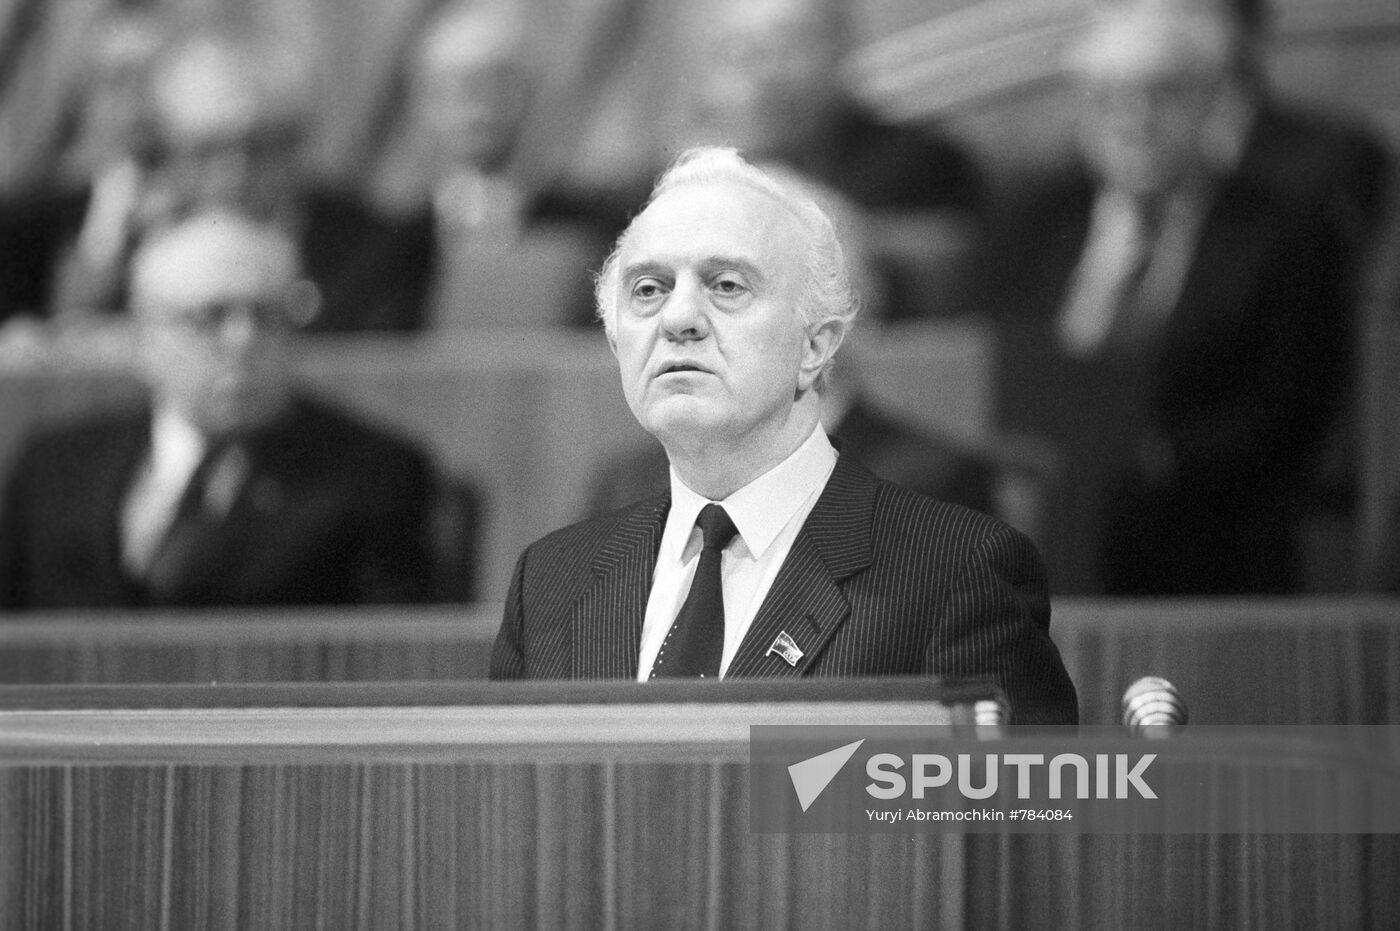 Soviet Foreign Minister Eduard Shevardnadze